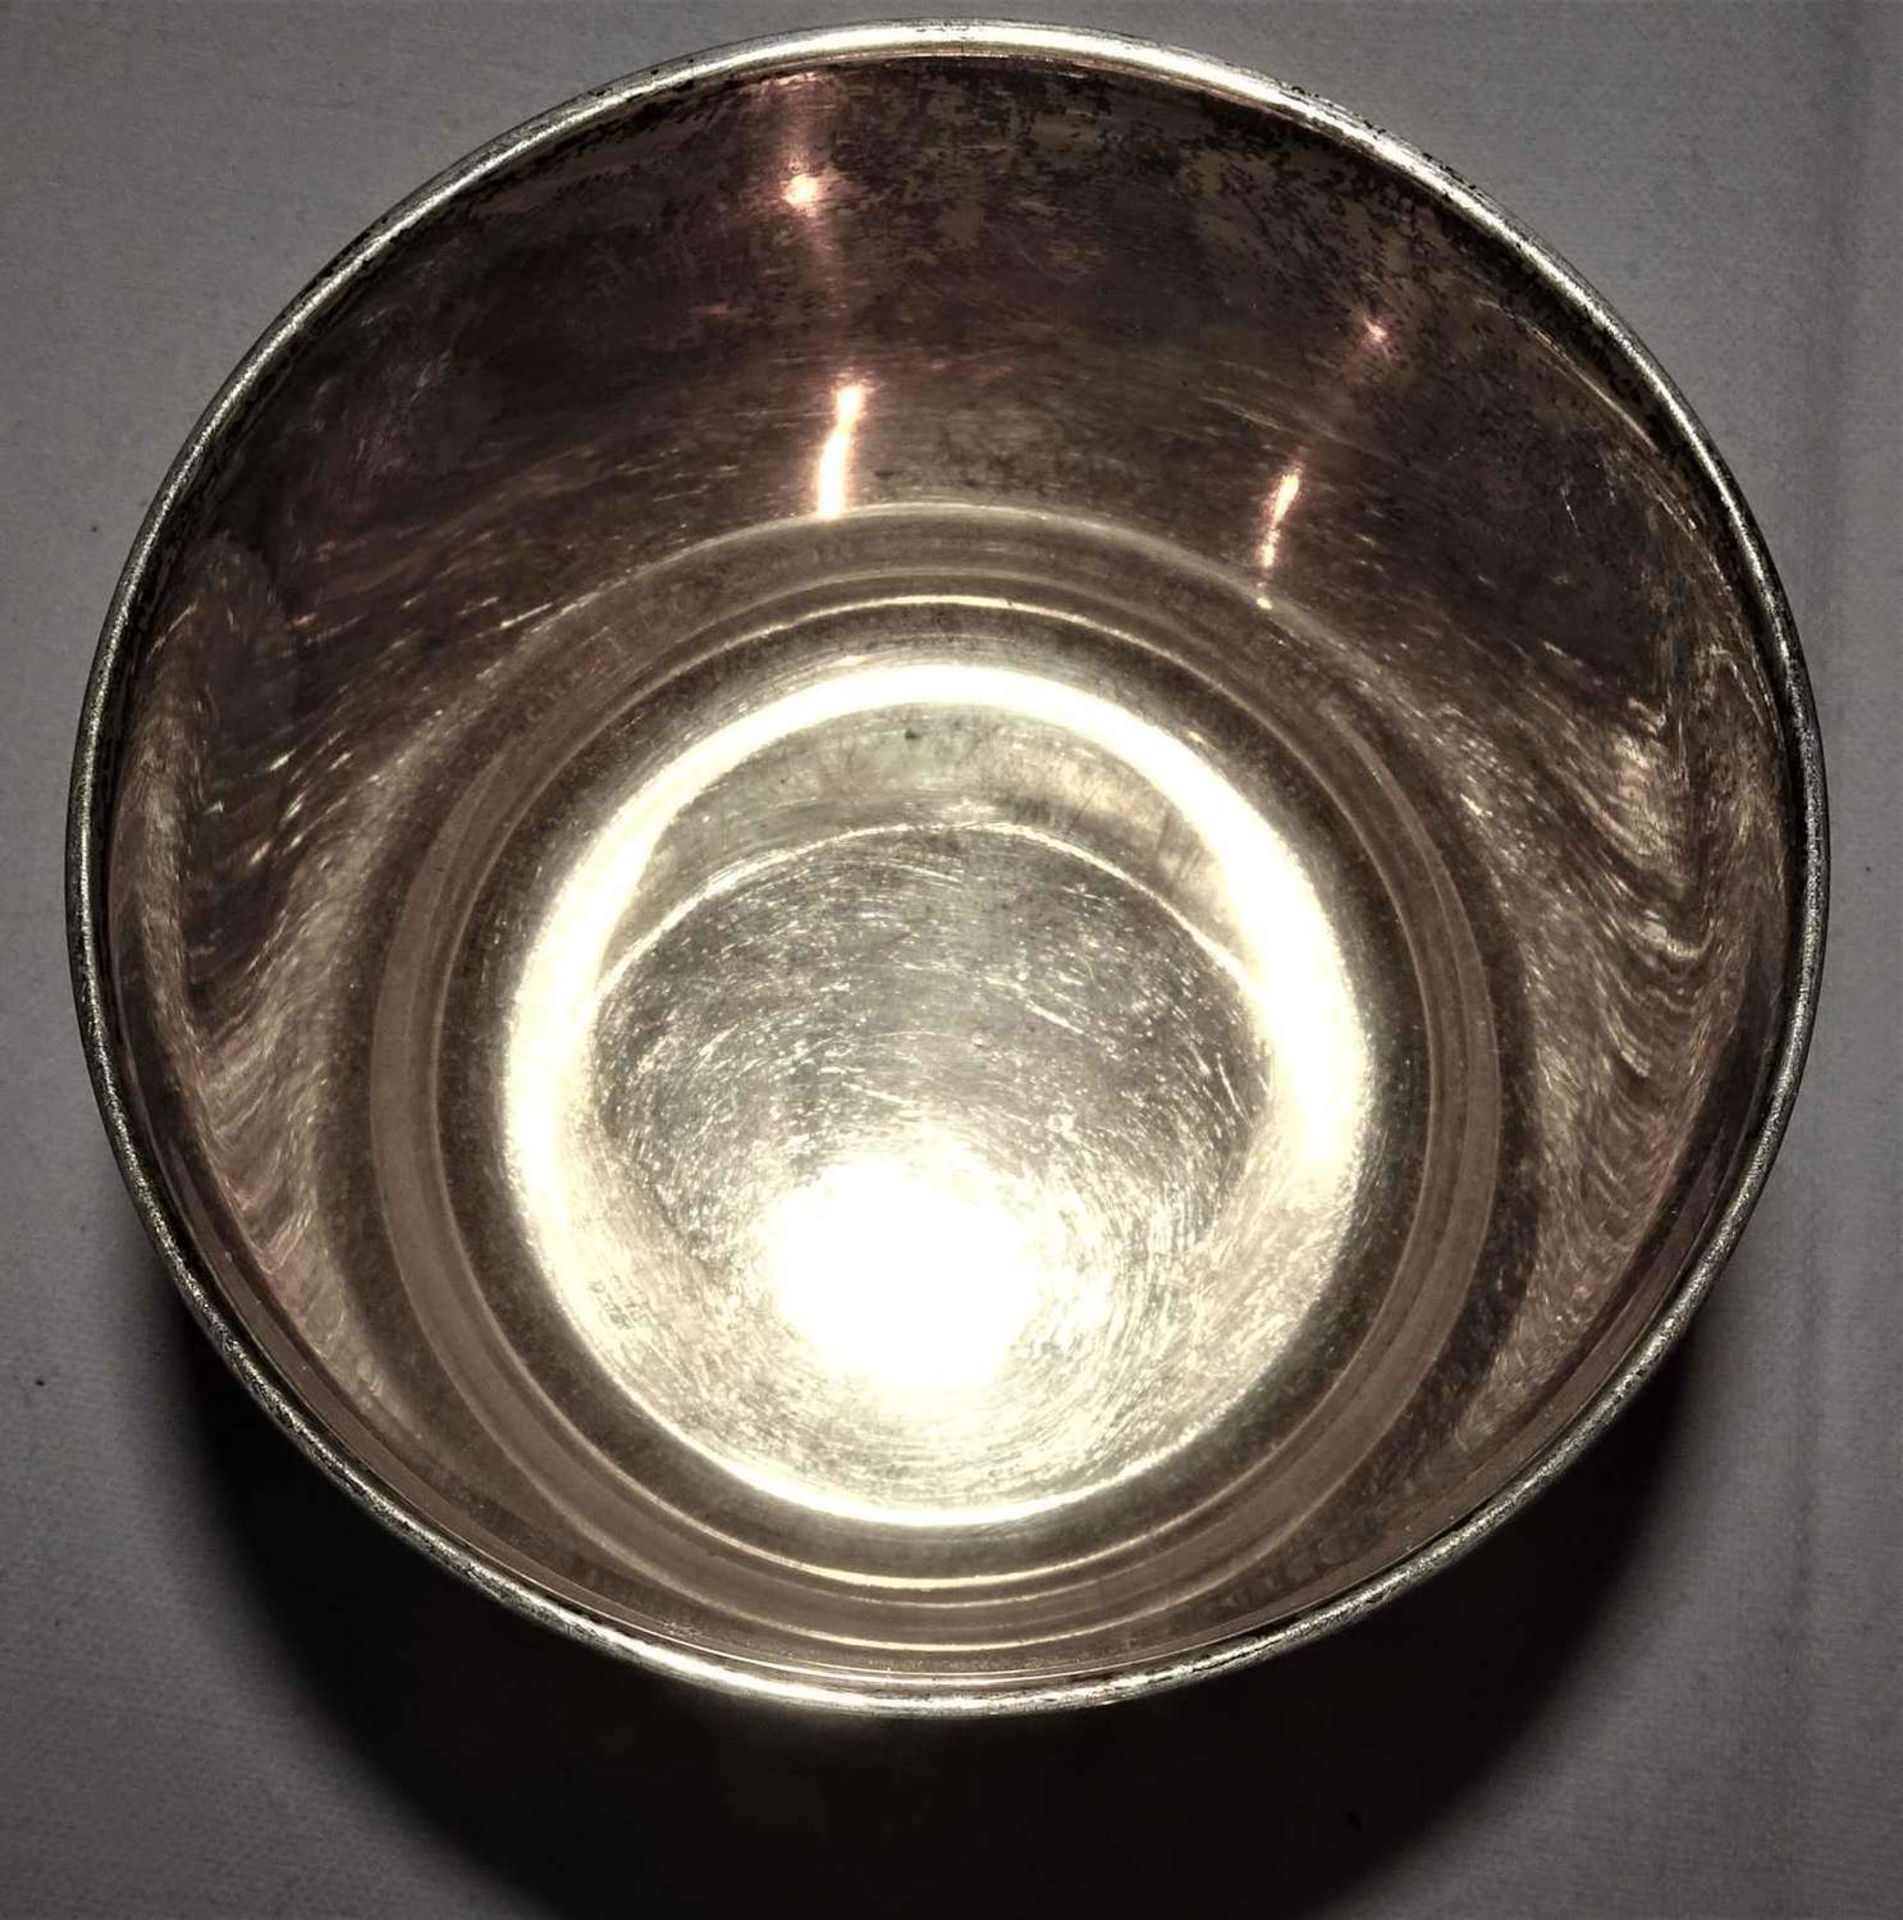 Trinkwappenbecher, 925er Silber, Innen vergoldet. Mehrfach gepunzt. Höhe ca. 6 cm, Durchmesser ca. - Image 4 of 5